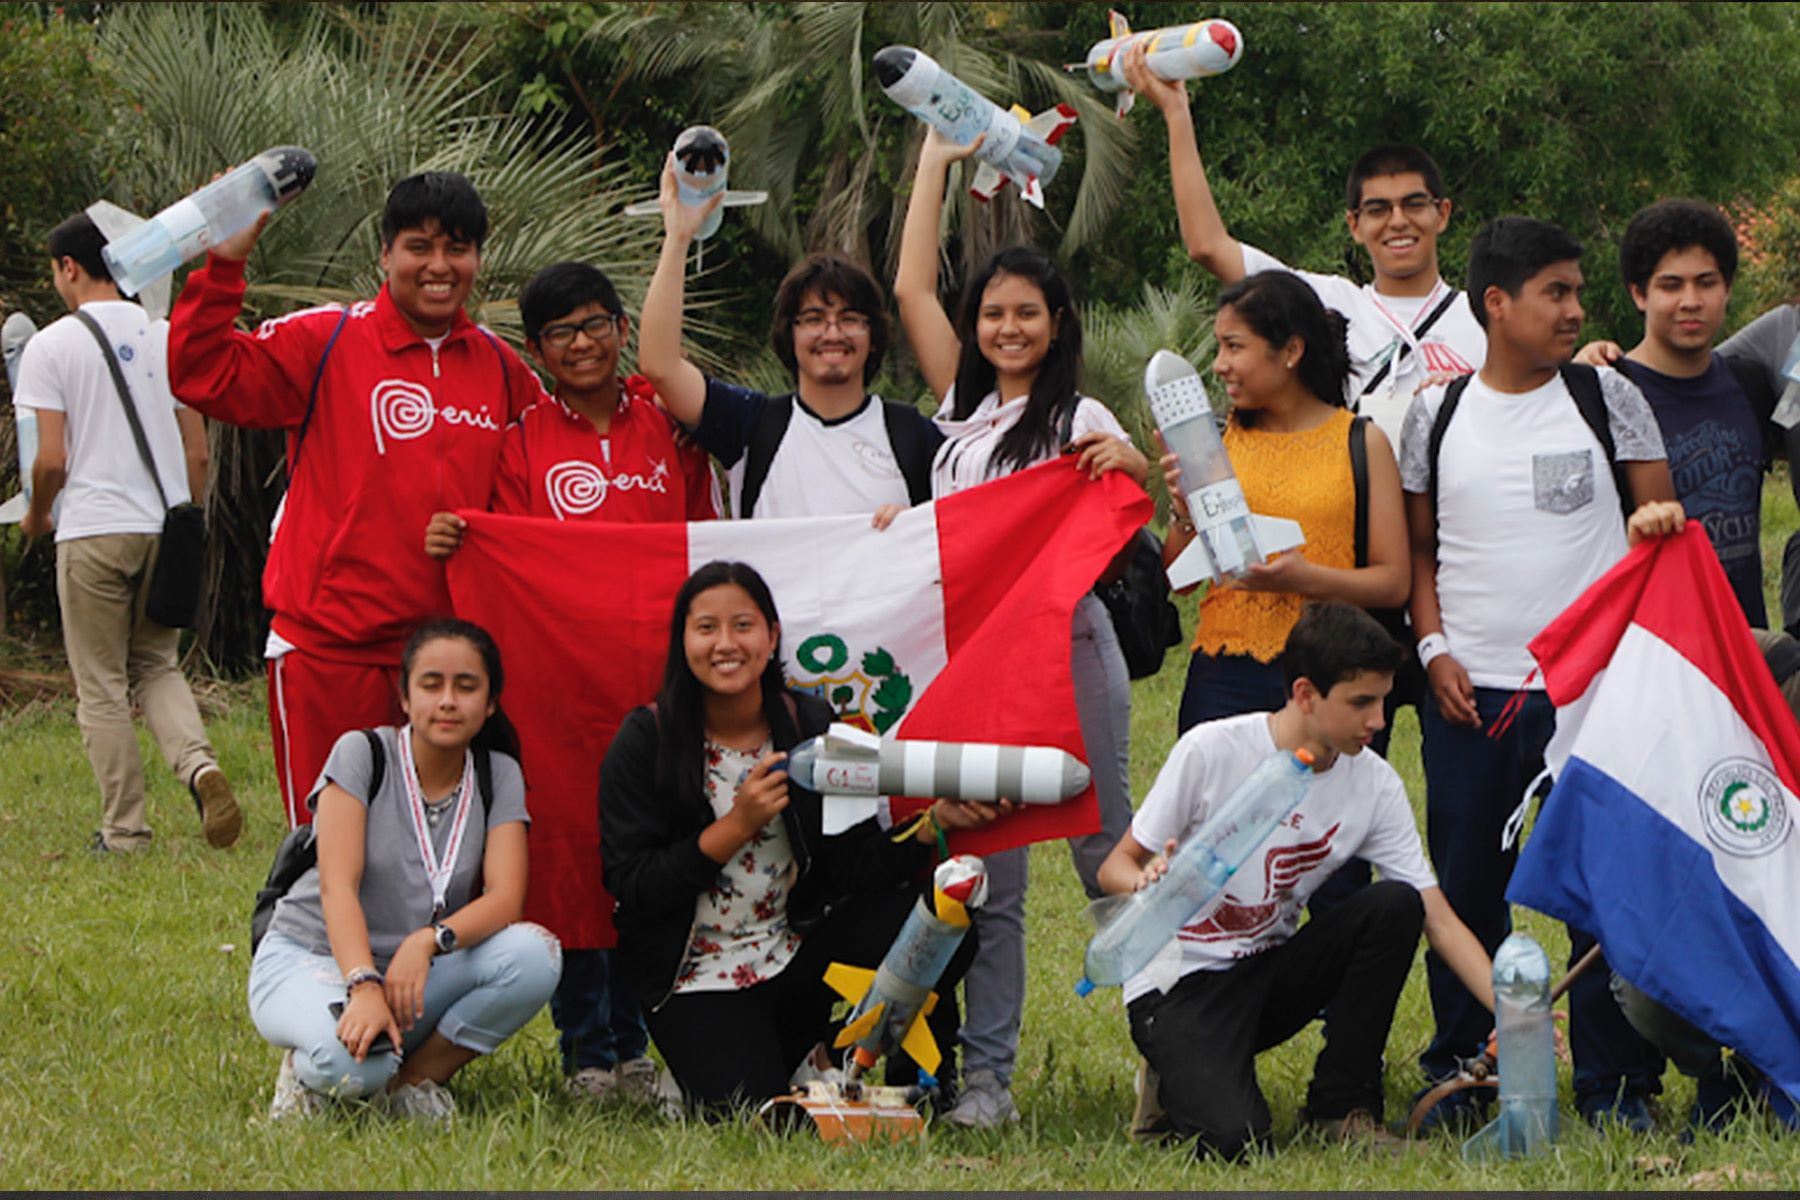 Los campeones de la segunda categoría (4to y 5to de secundaria) son los que representan al Perú en olimpiadas internacionales de astronomía y son los únicos que tiene el aval académico nacional para hacerlo.